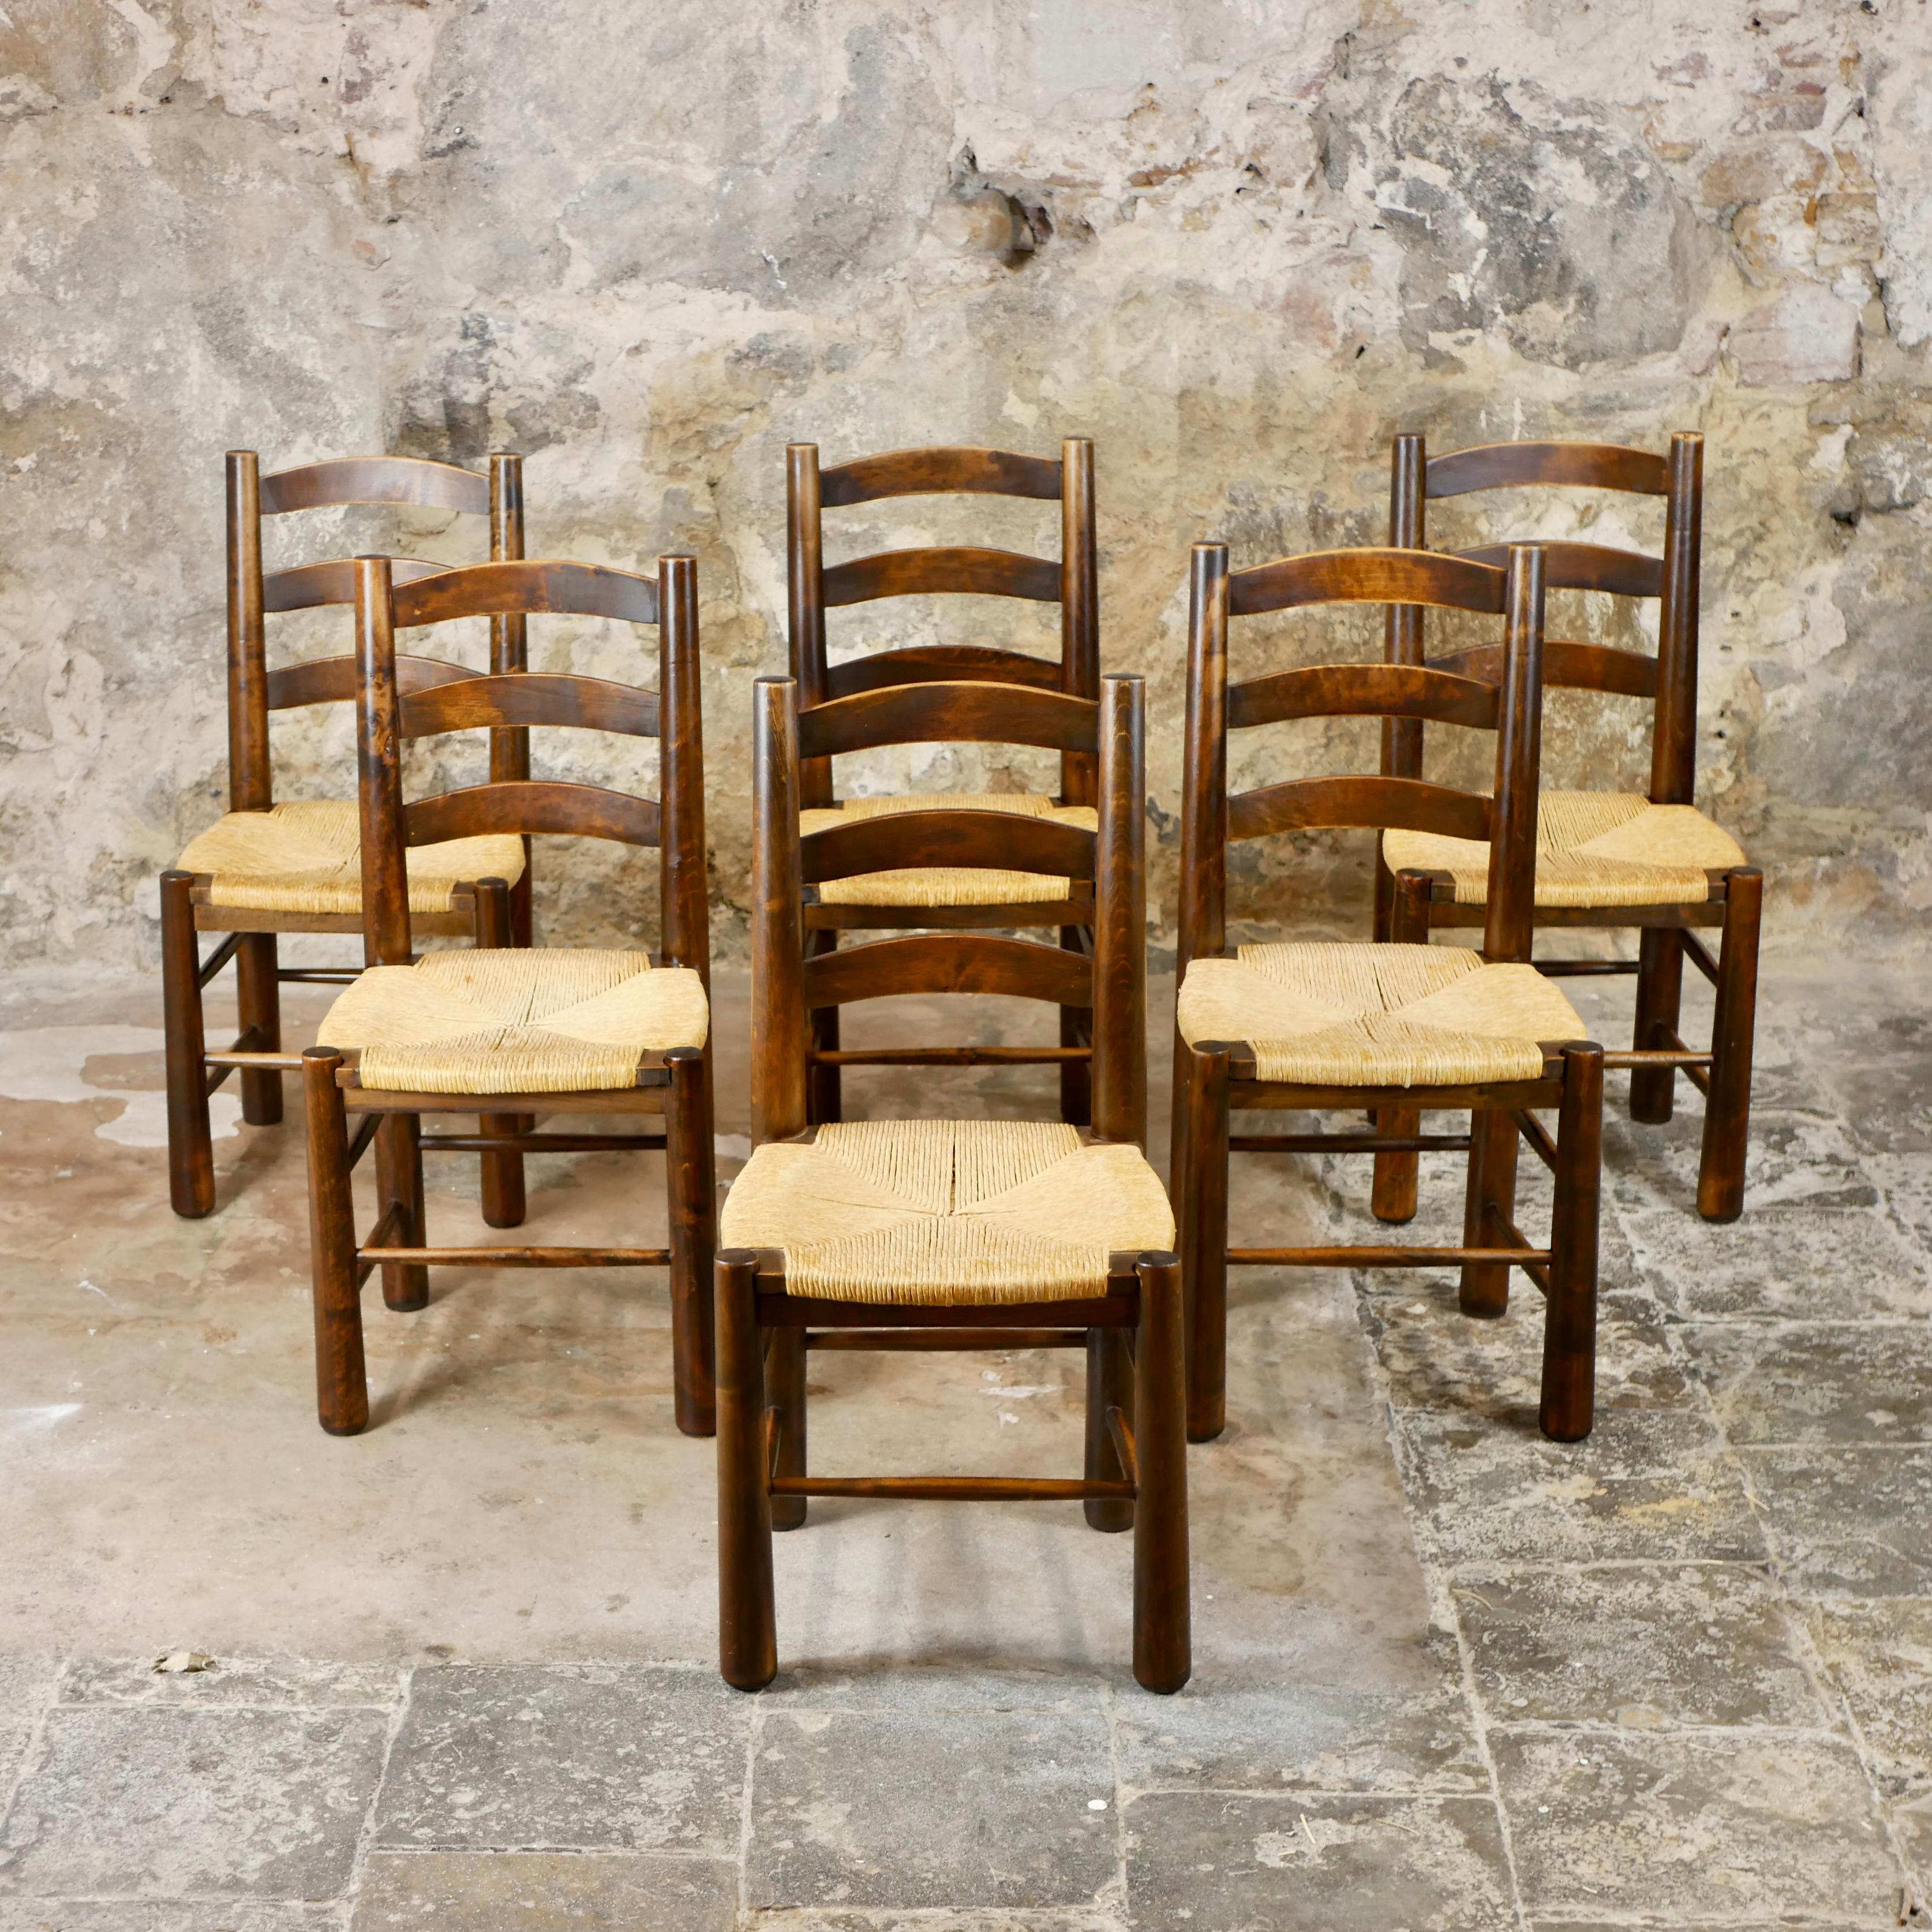 Satz von 6 brutalistischen Stühlen, hergestellt in den 1950er Jahren in Frankreich von Georges Robert.
Mit ihrem rustikalen und schlichten Design sind sie wie geschaffen für Häuser auf dem Lande, doch mit ihrer wunderschönen Holzmaserung und den